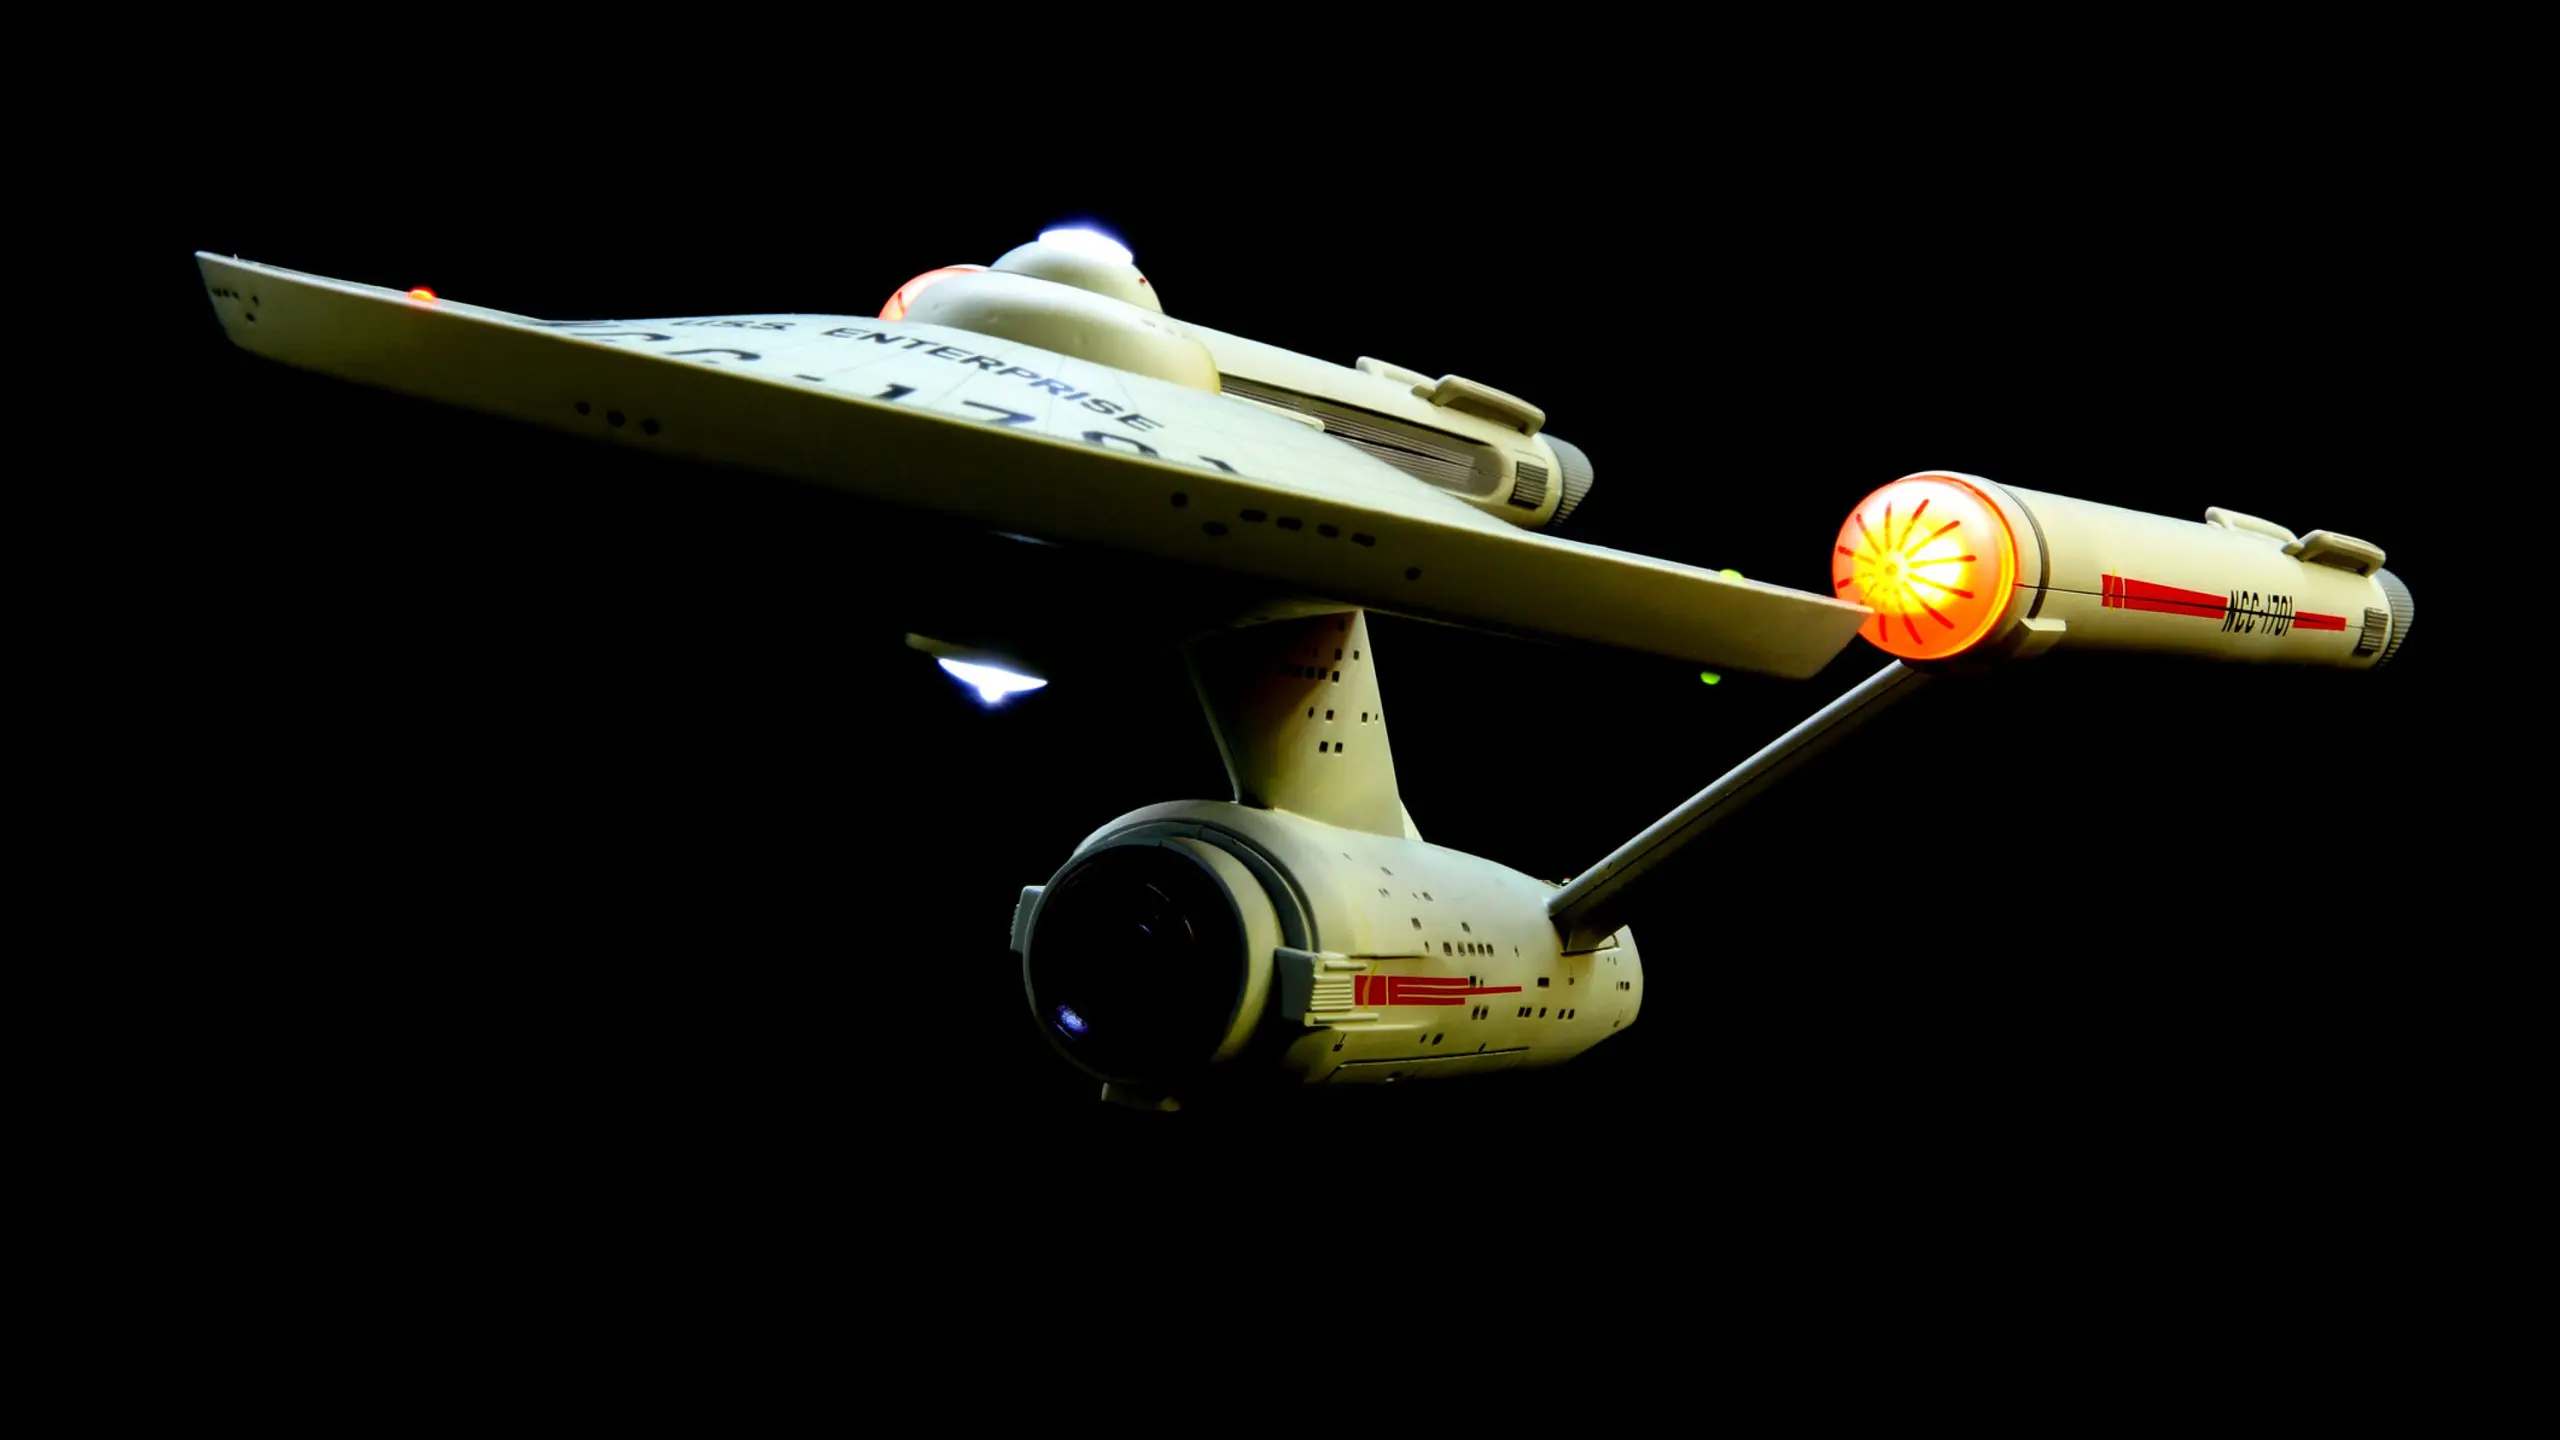 Die USS Enterprise NCC-1701, das Raumschiff Enterprise, aus Star Trek.